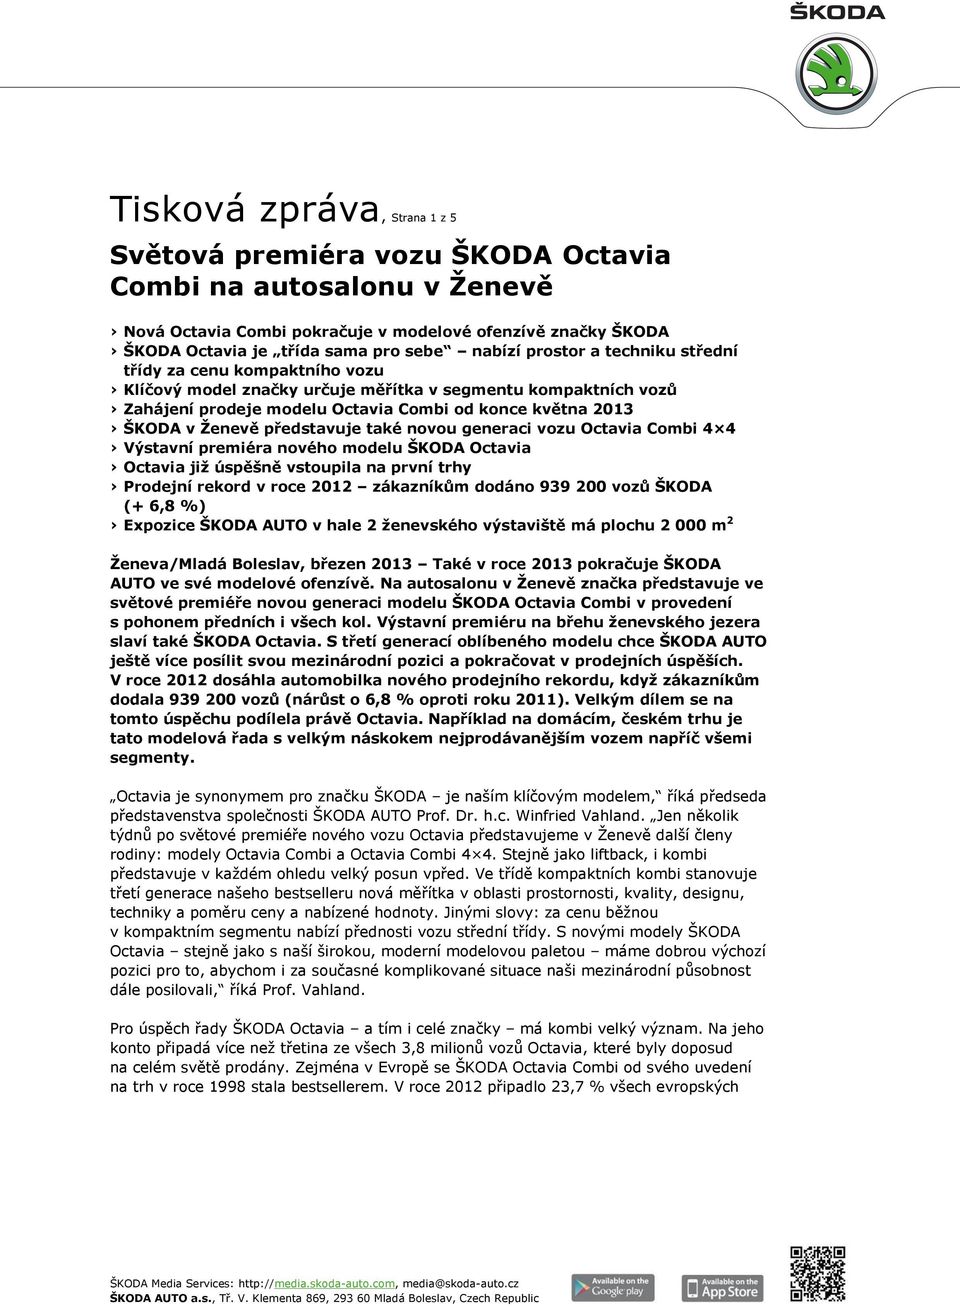 představuje také novou generaci vozu Octavia Combi 4 4 Výstavní premiéra nového modelu ŠKODA Octavia Octavia již úspěšně vstoupila na první trhy Prodejní rekord v roce 2012 zákazníkům dodáno 939 200